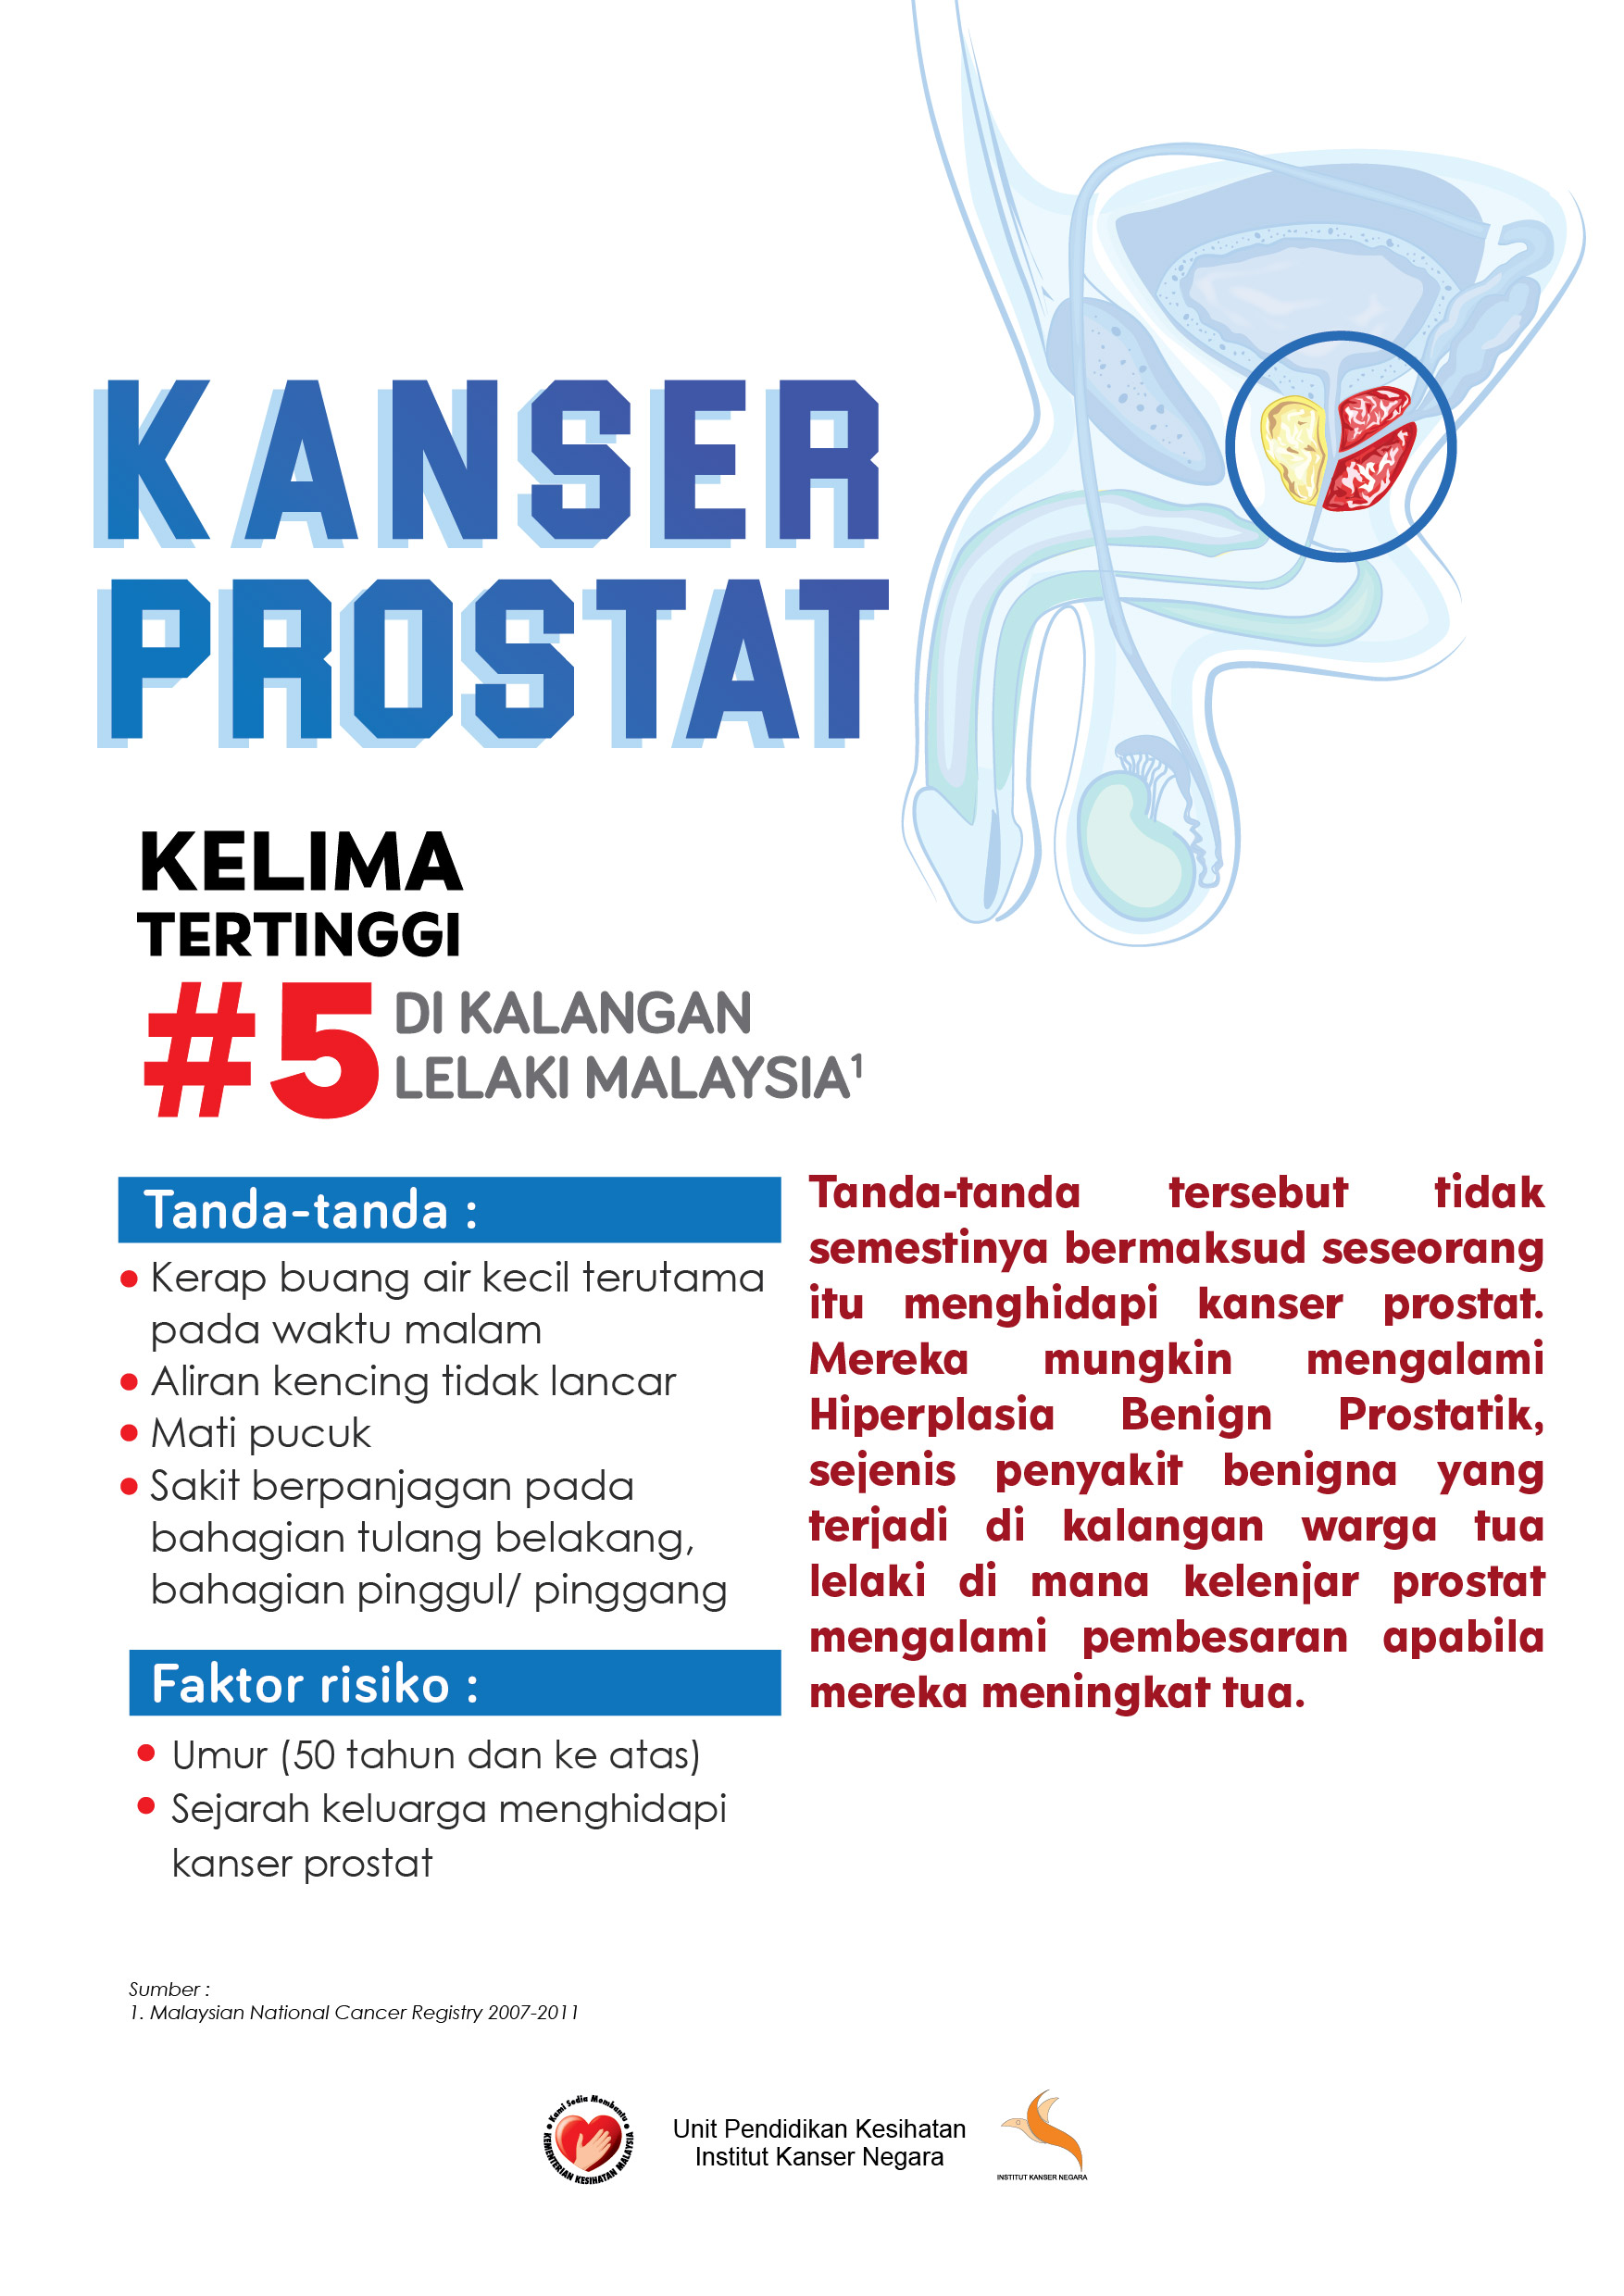 Poster A2 kanser prostat 01